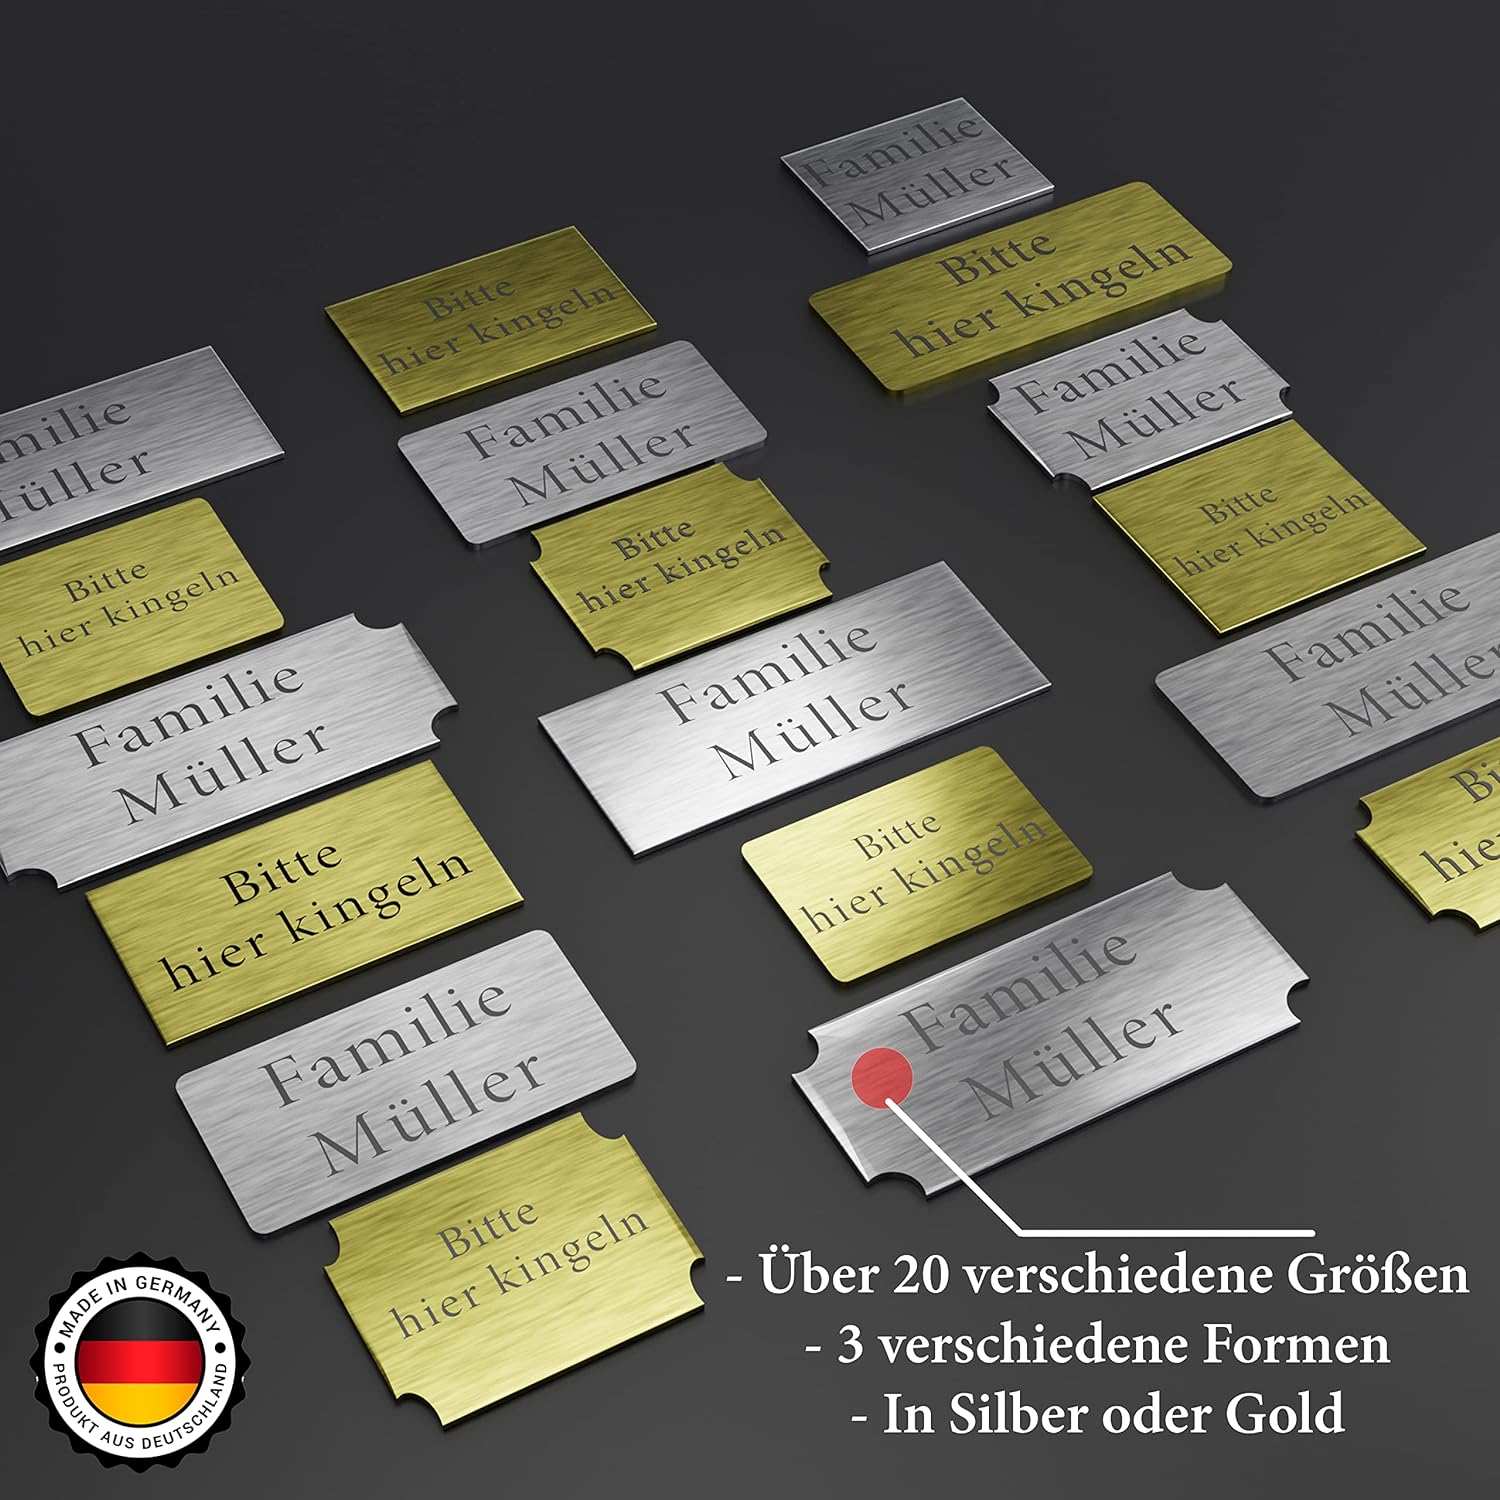 2x Klingelschild selbstklebend Briefkastenschild - Briefkasten Namensschild